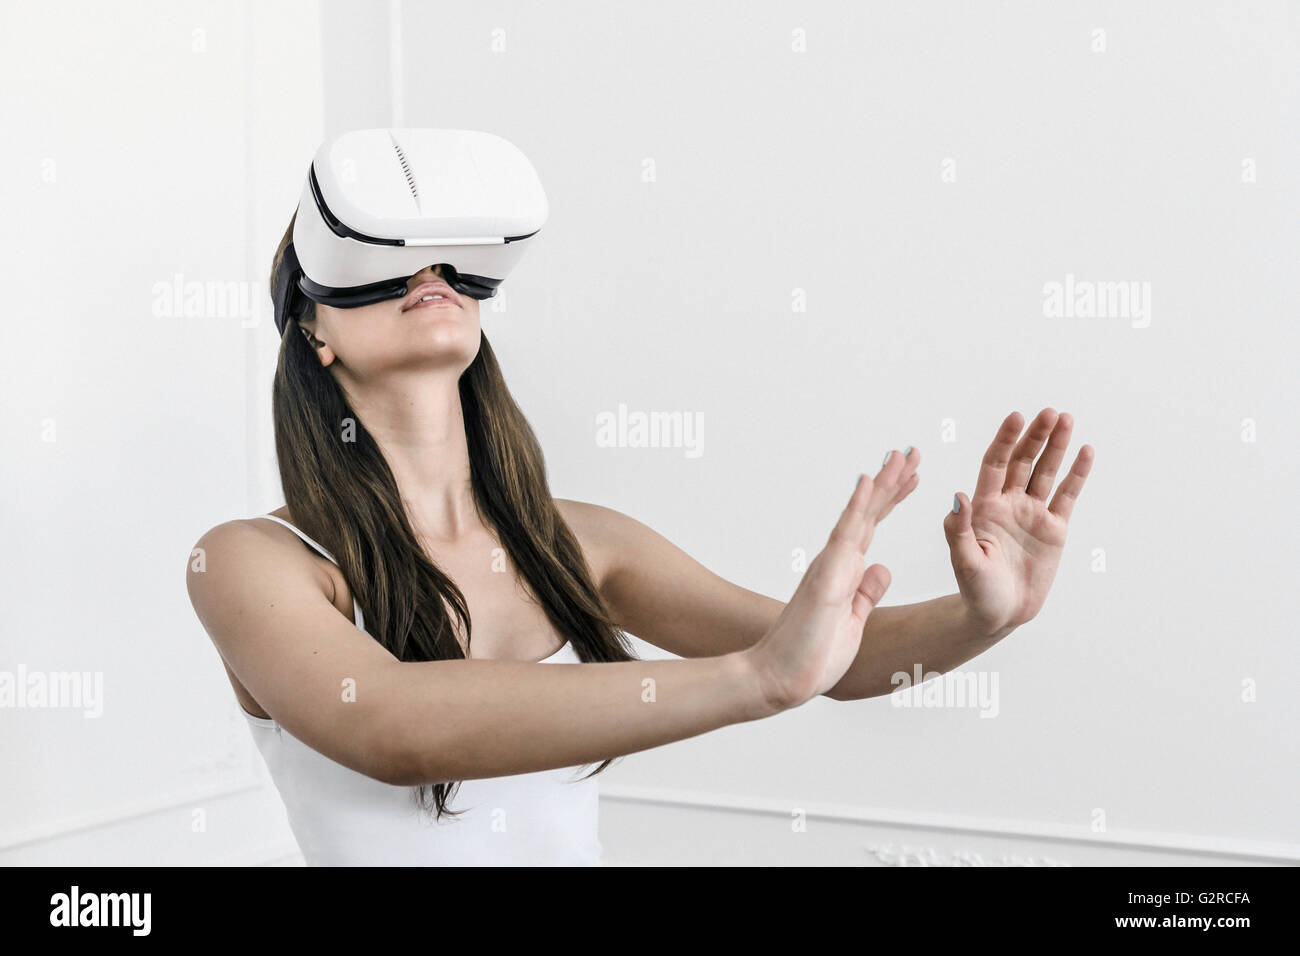 Una giovane donna bianca con i capelli scuri sta con le braccia tese a sentire e di senso con una realtà virtuale heasdet sul suo capo Foto Stock